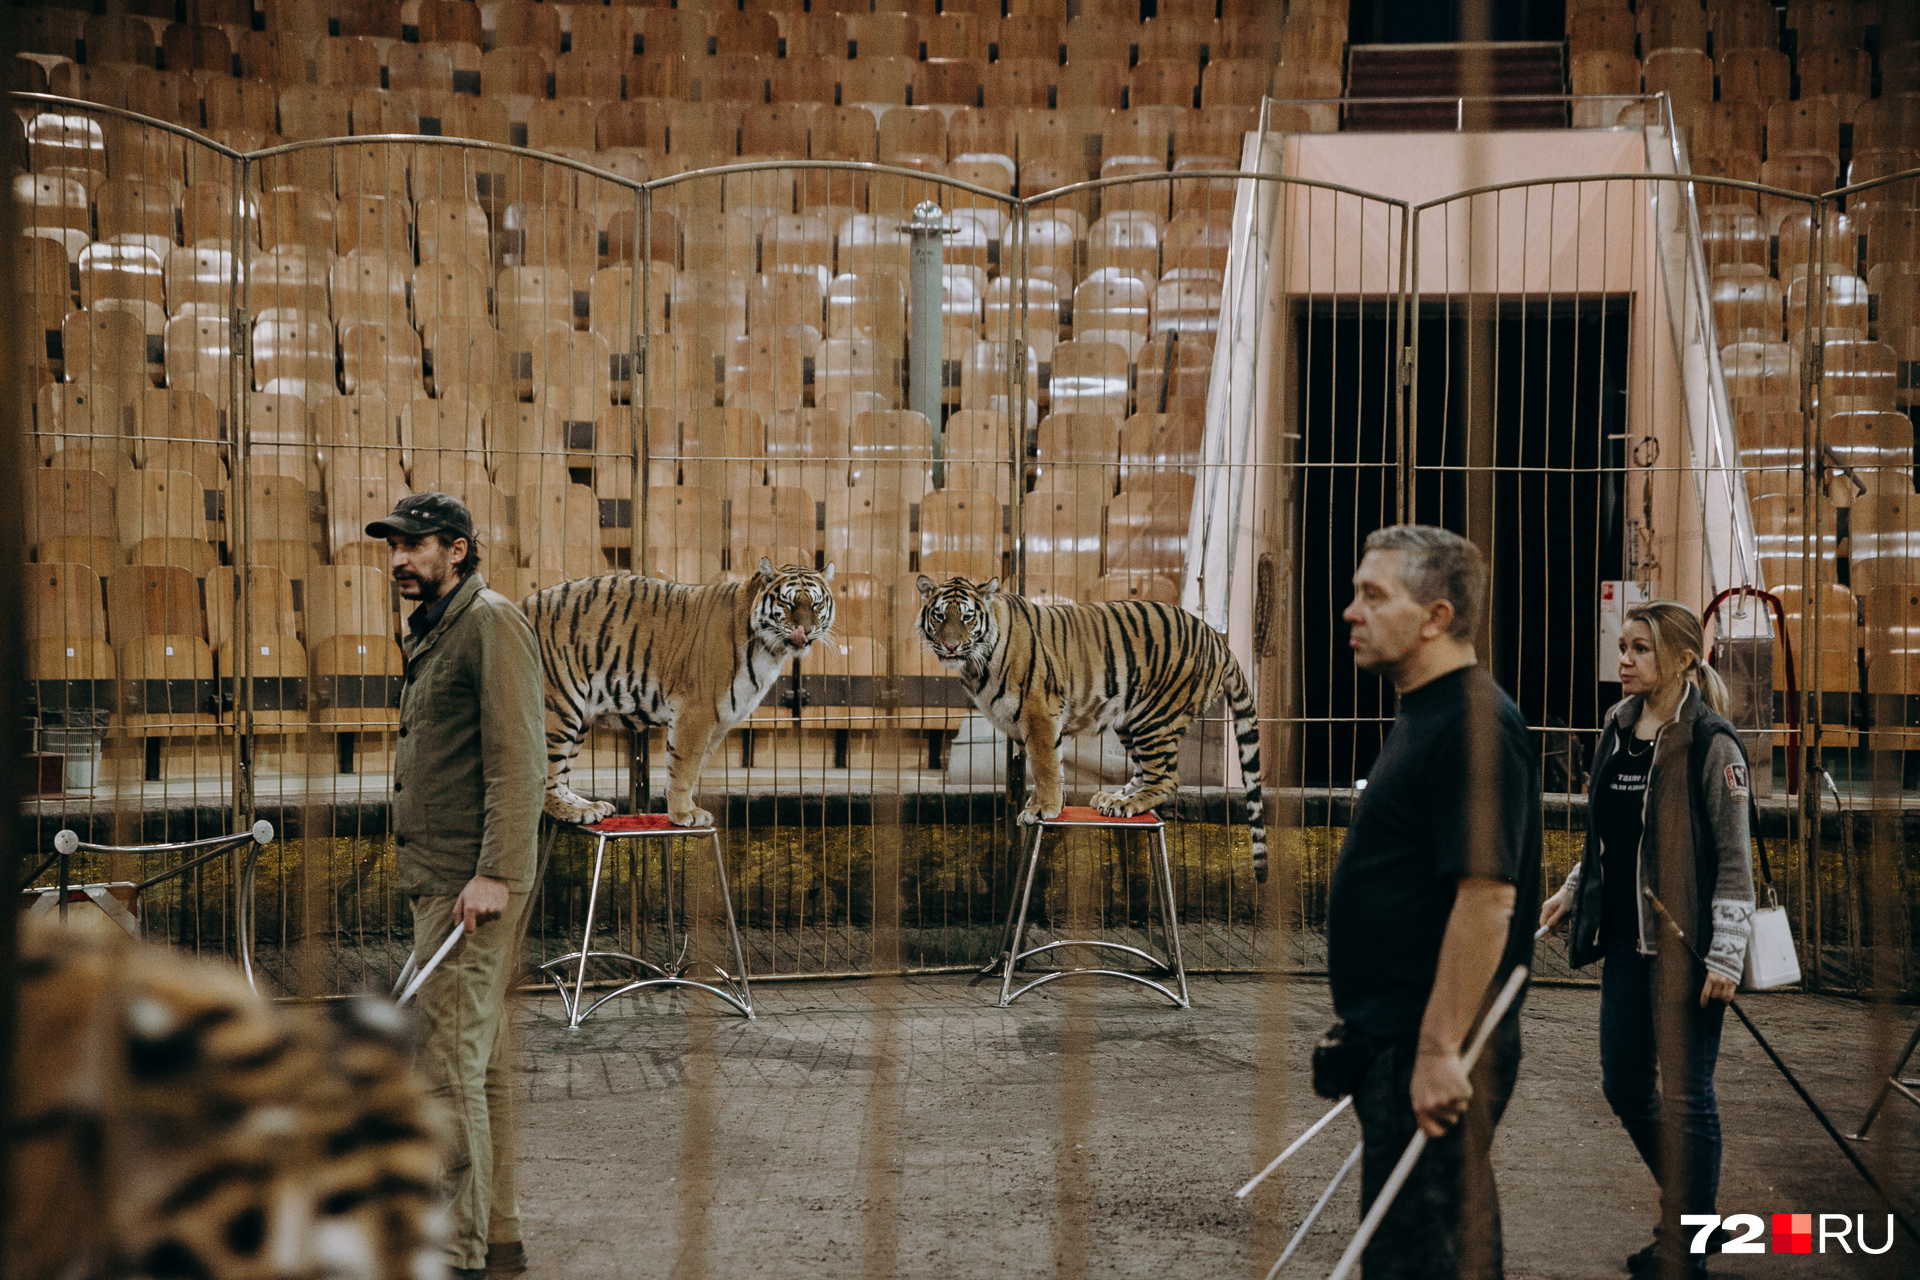 Двое мужчин на манеже — ассистенты. Да, им очень страшно в окружении тигров и львов, но они это не показывают